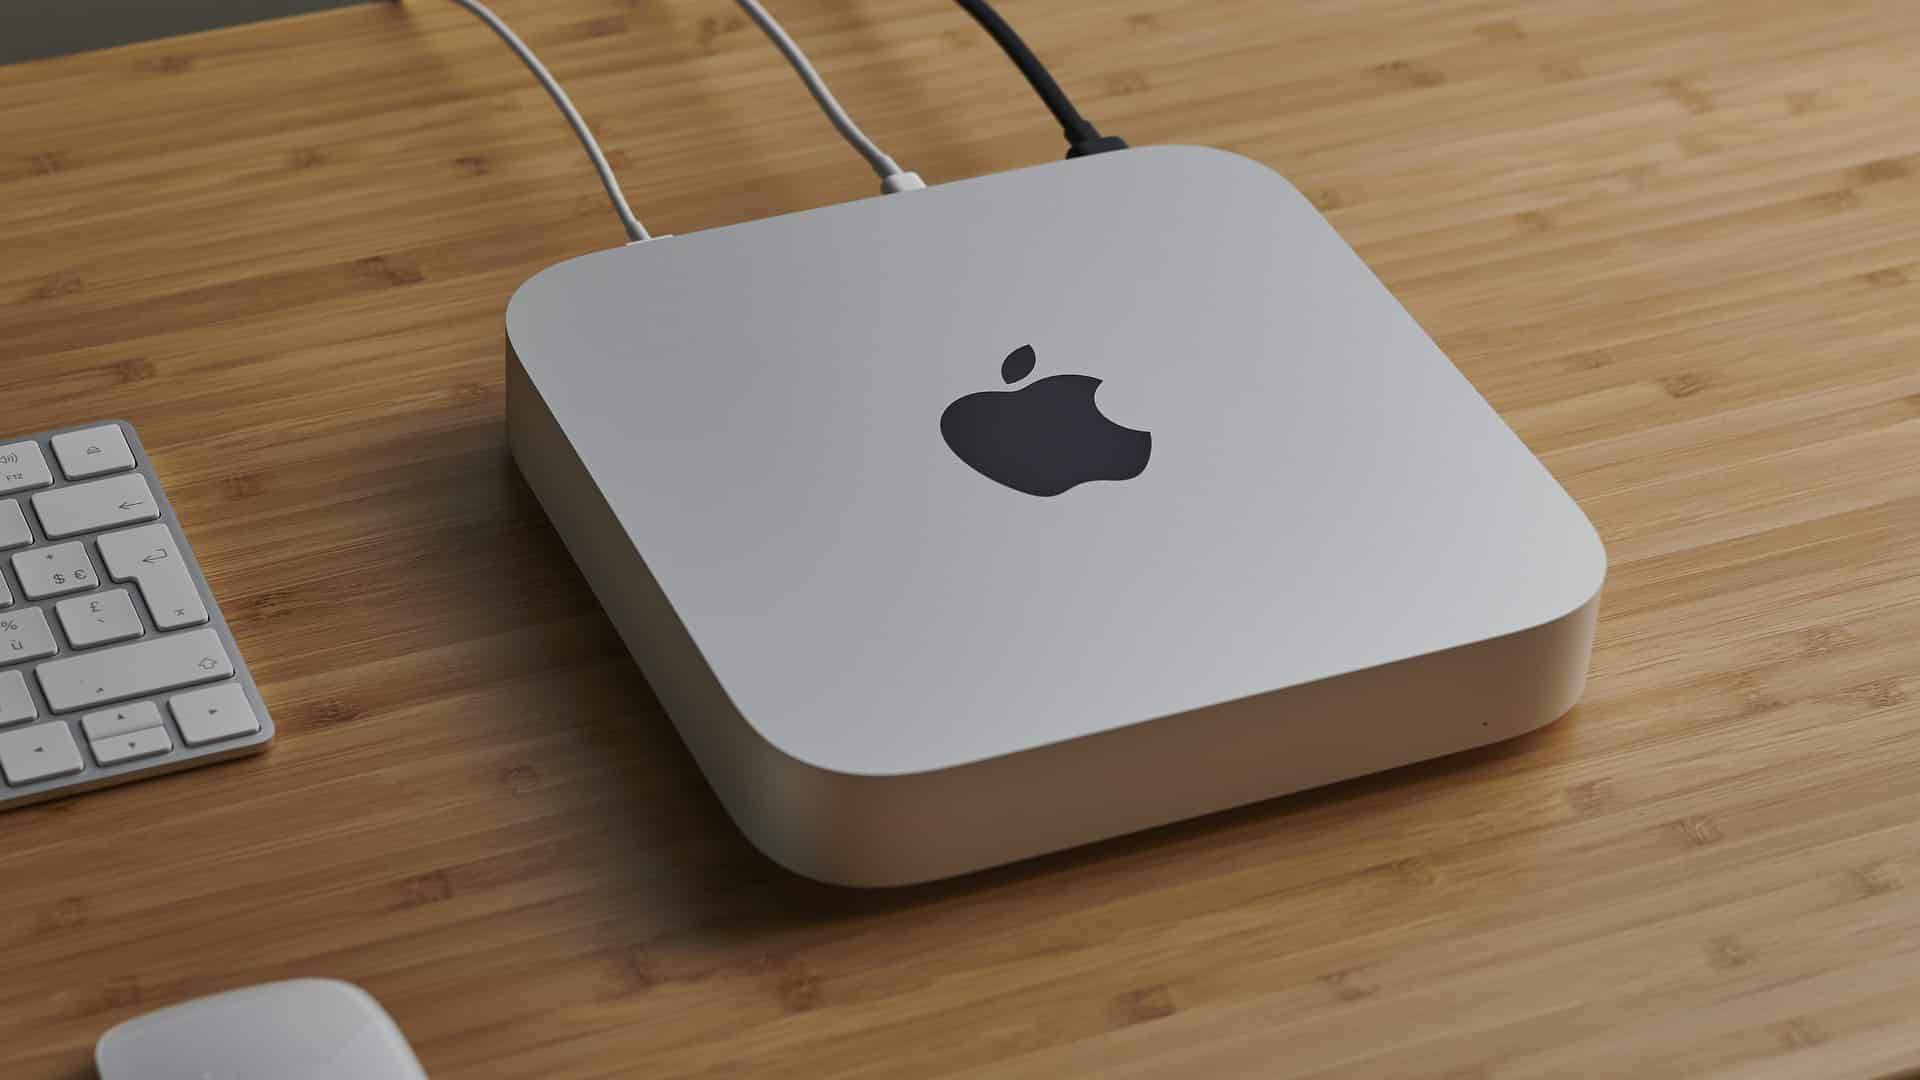 Apple's Mac Mini